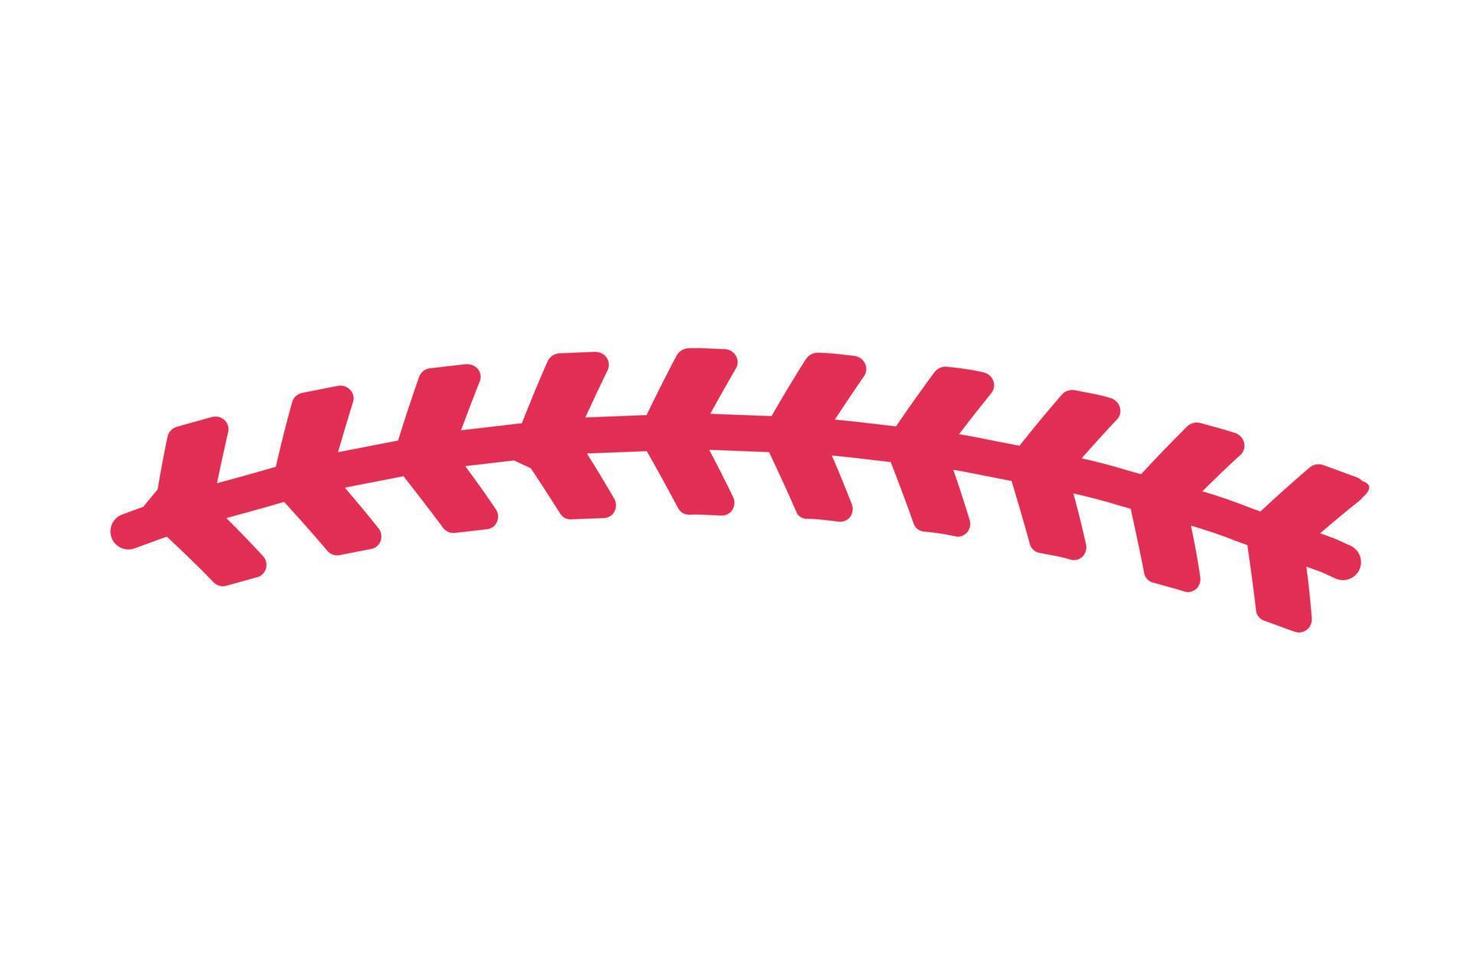 rosso baseball punto popolare all'aperto sportivo eventi vettore